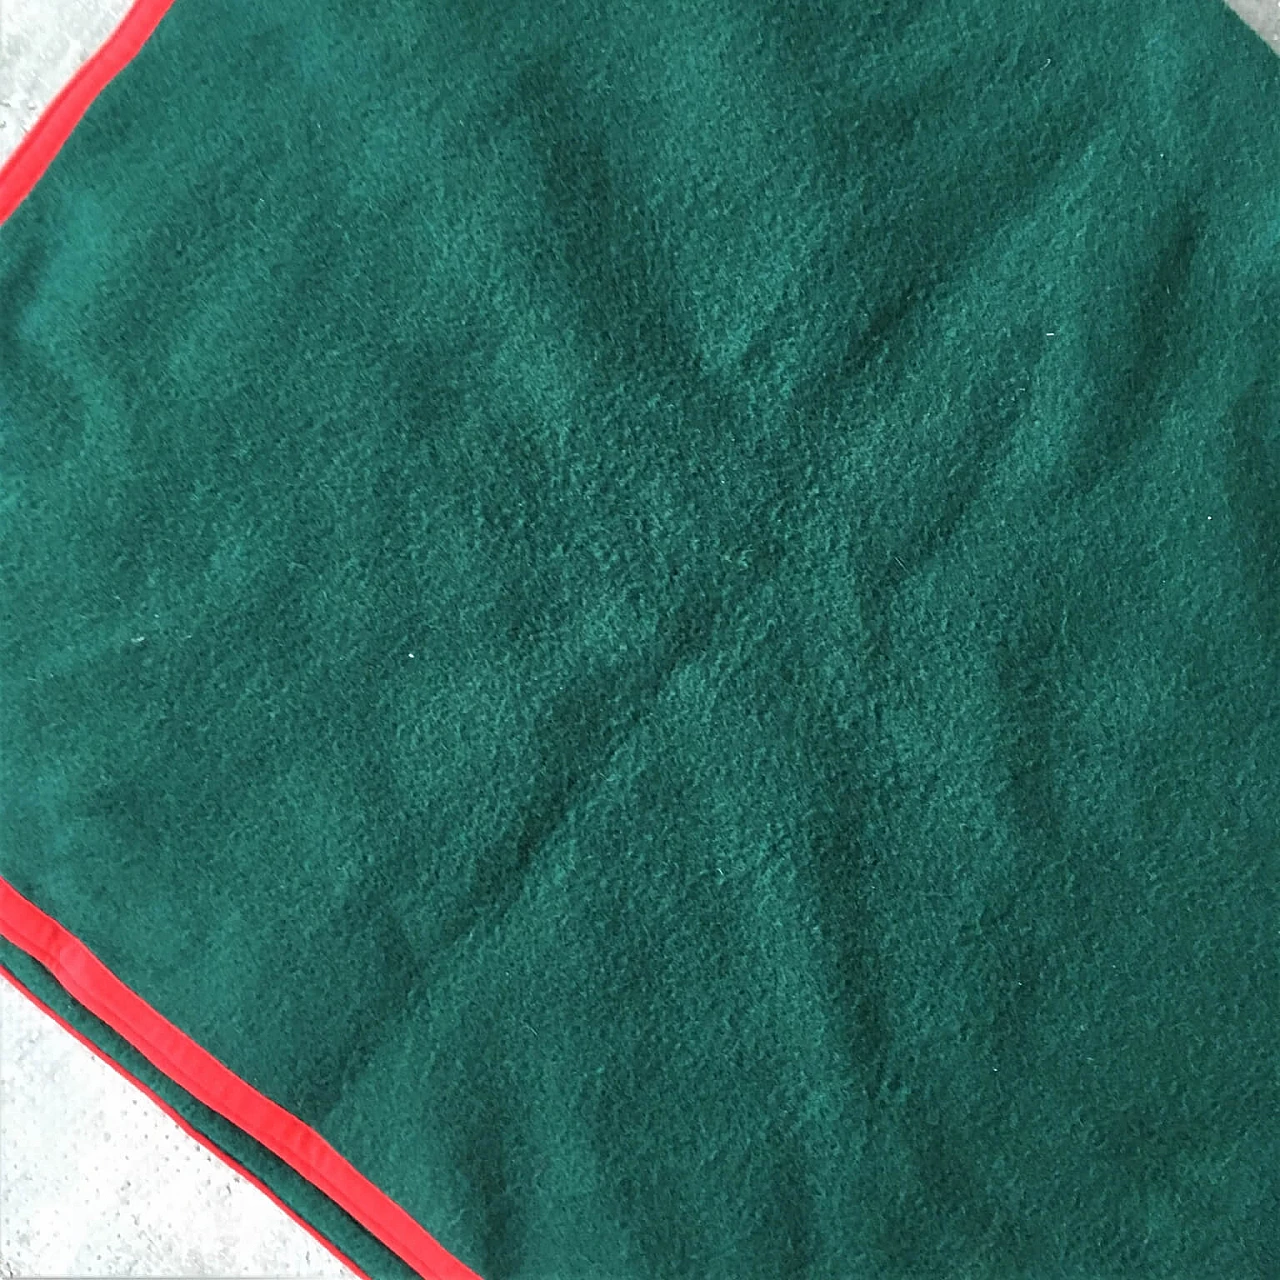 Coperta verde Selleria Pariani, realizzata a mano, pura lana vergine, profili rossi e cuoio, 1980 1071712